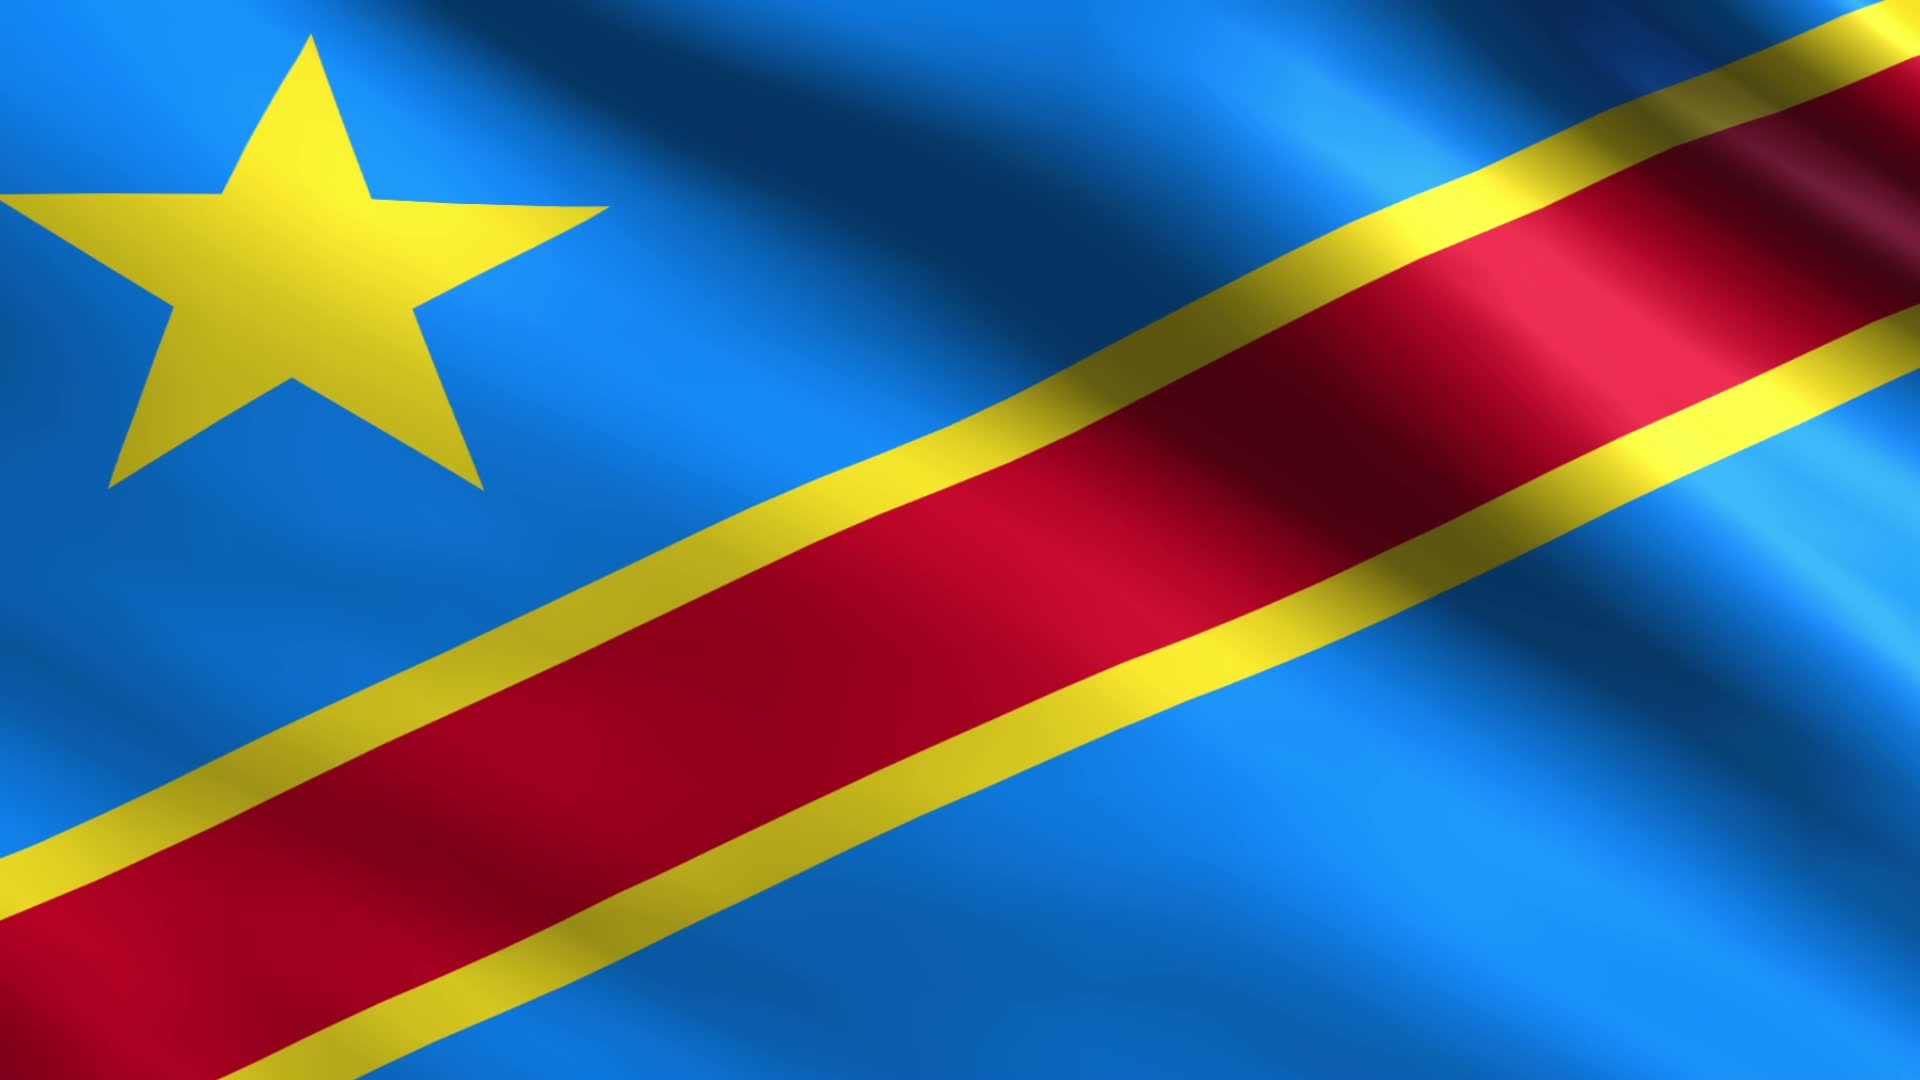 Congolese travels, Flag wallpapers, 11 democratic republic, Congo, 1920x1080 Full HD Desktop